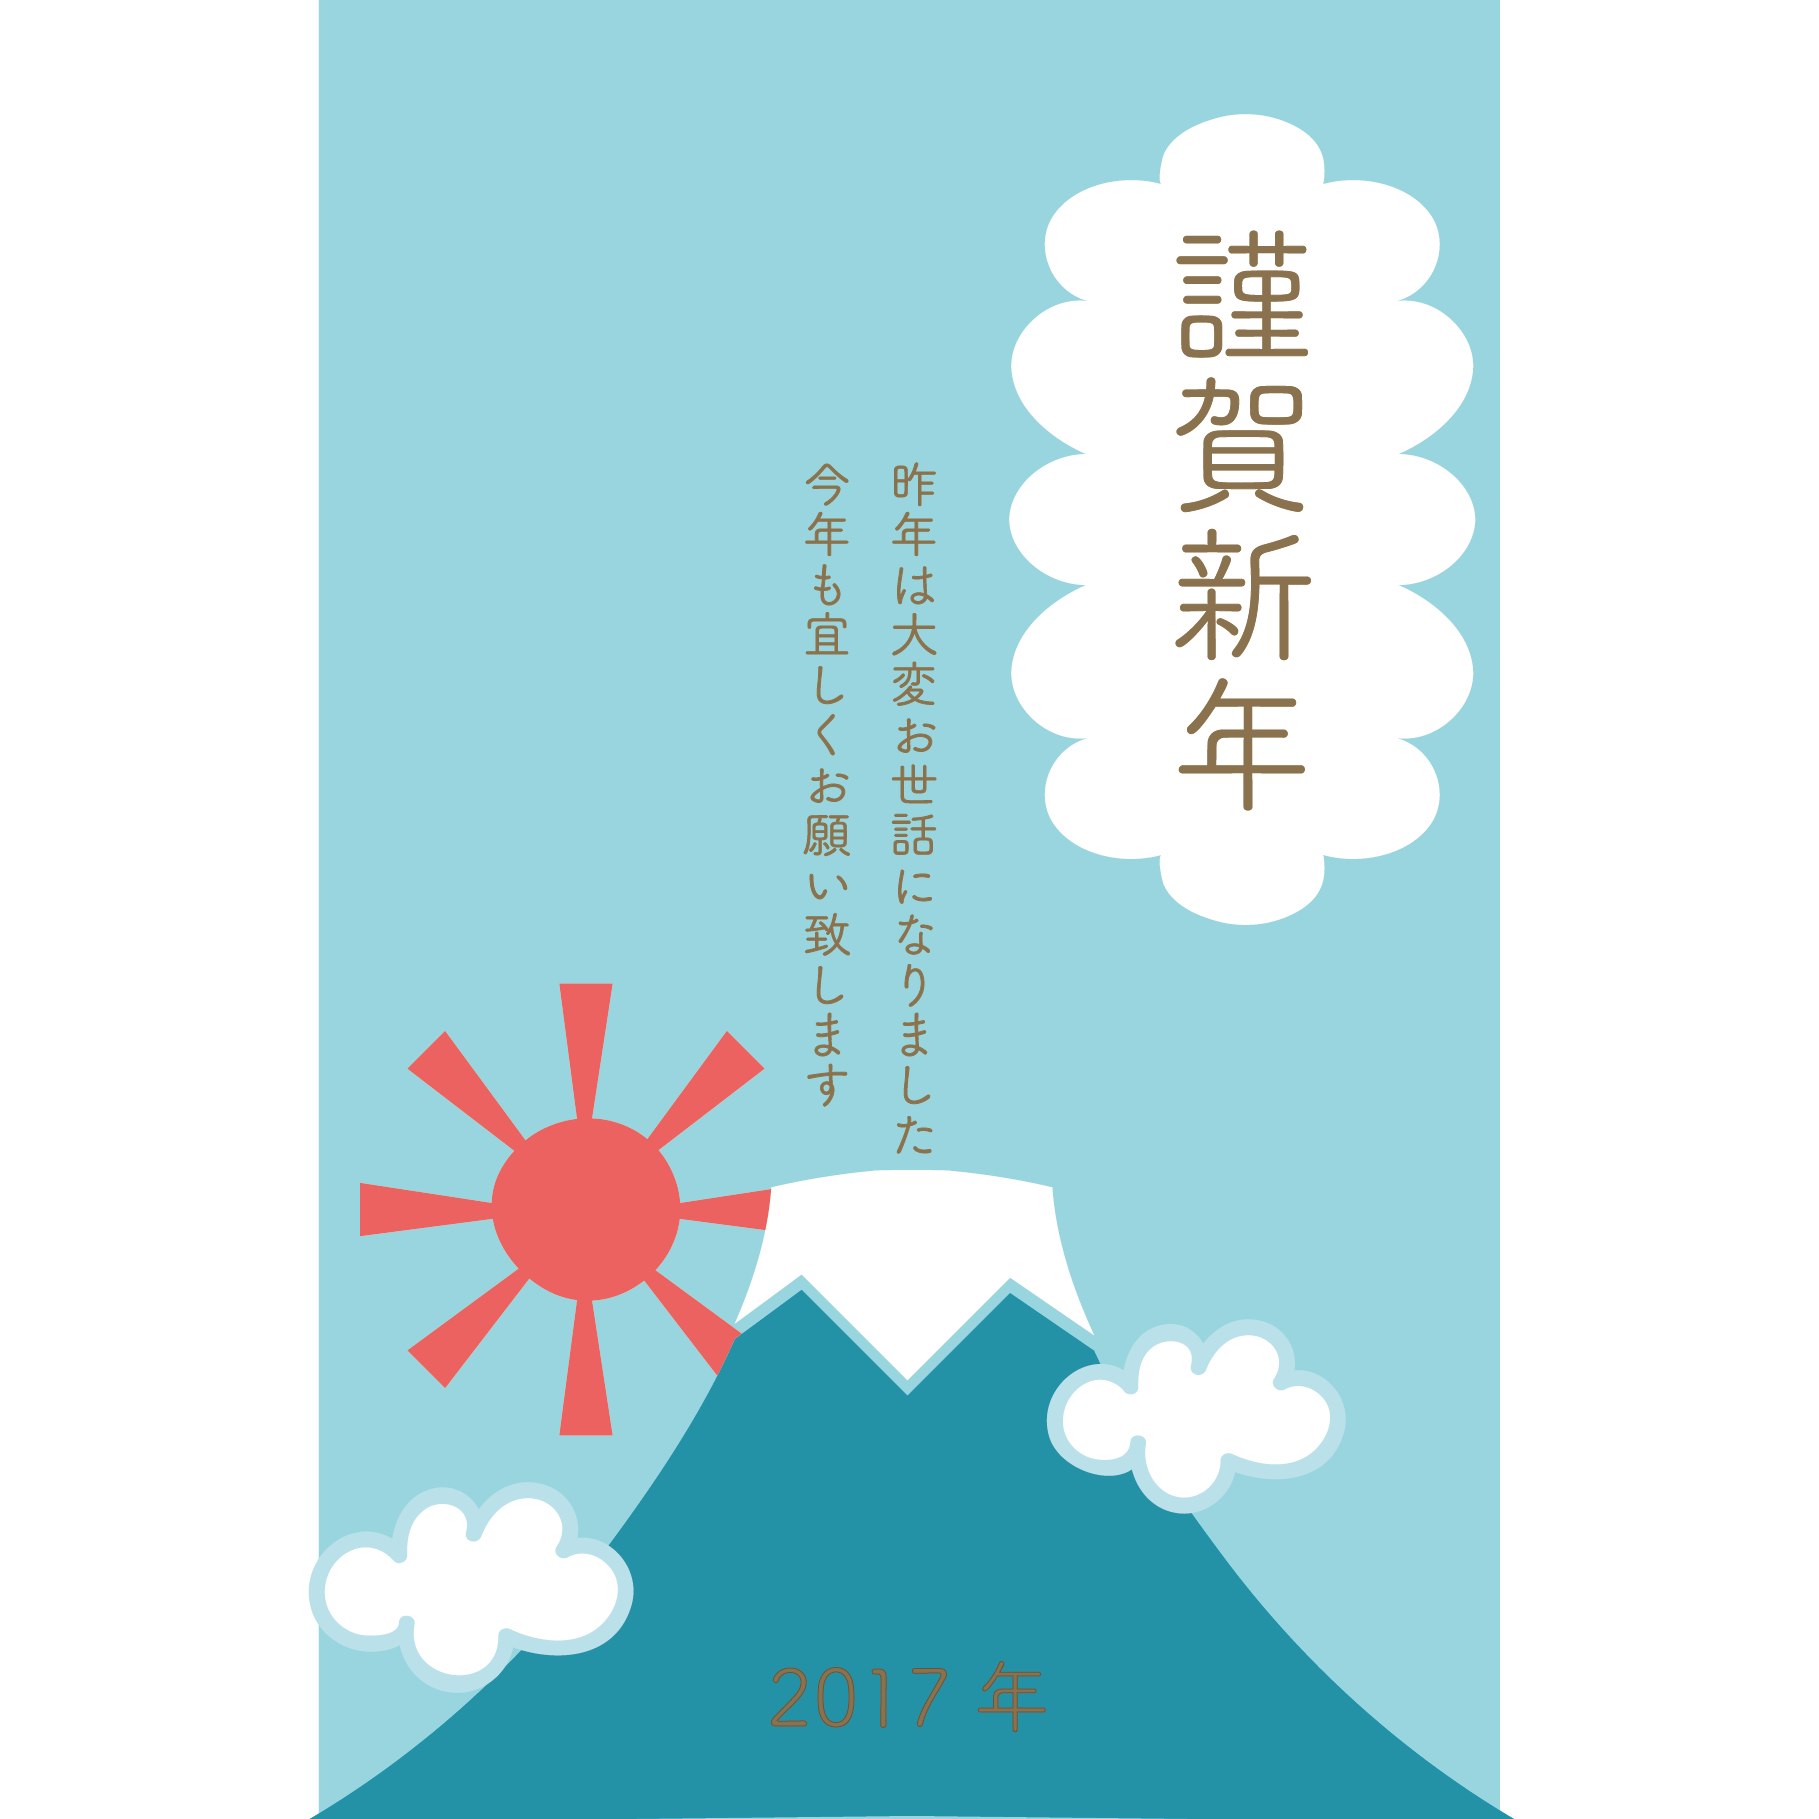 17年 年賀状 お天気富士山あっぱれ 初日の出のイラスト 縦 商用フリー 無料 のイラスト素材なら イラストマンション